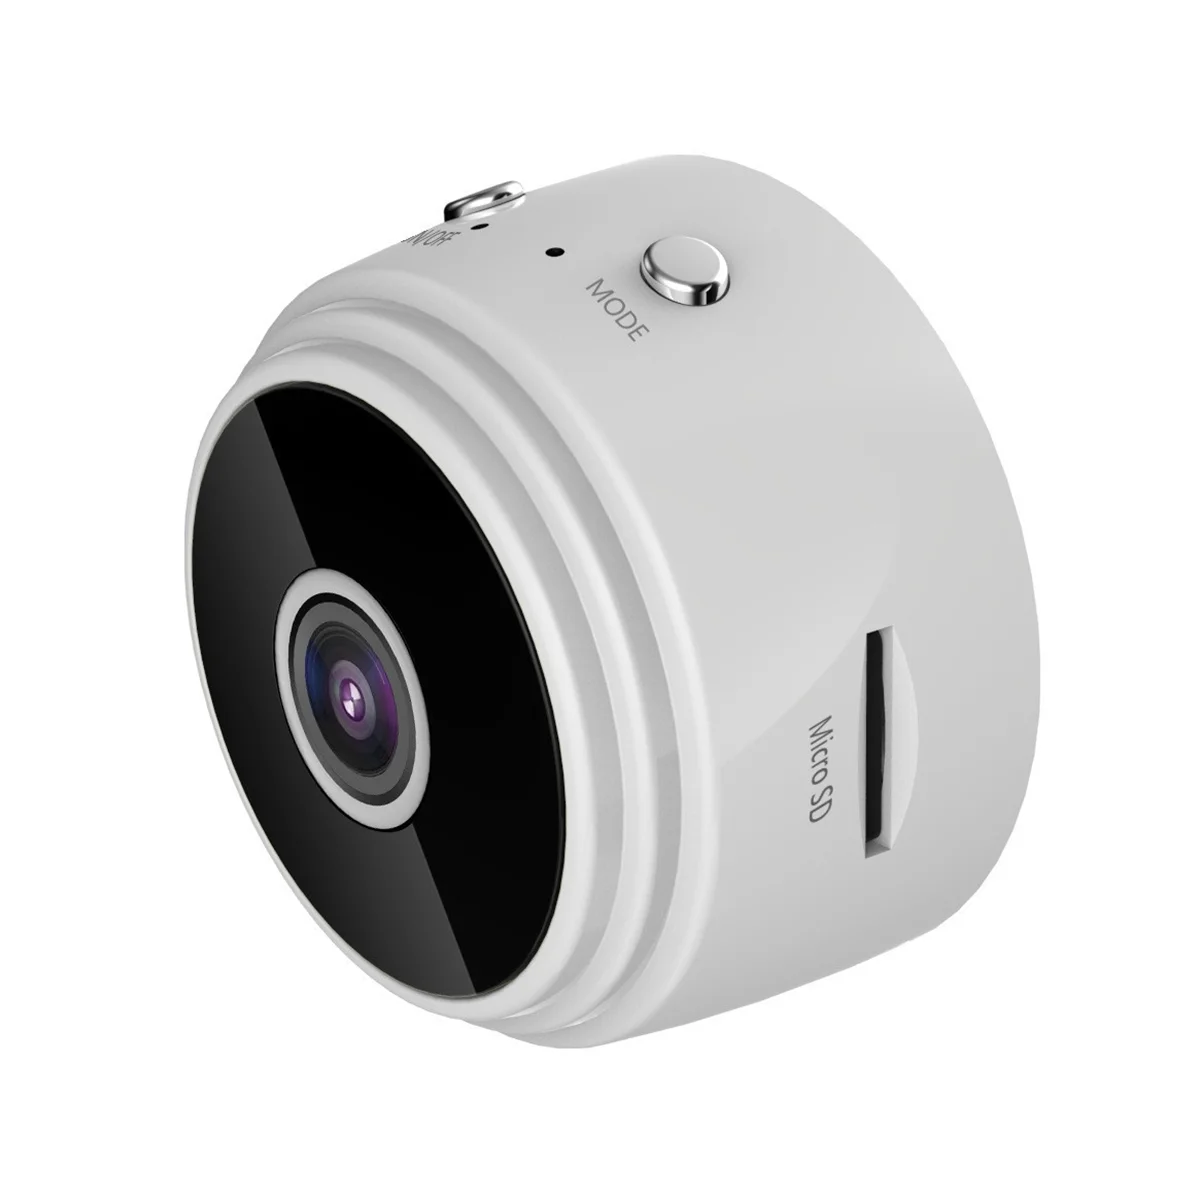  Madáretető vezeték nélküli kültéri kamerával, madárház 720P kamerával Éjszakai verzió WiFi kamera, fehér - 0